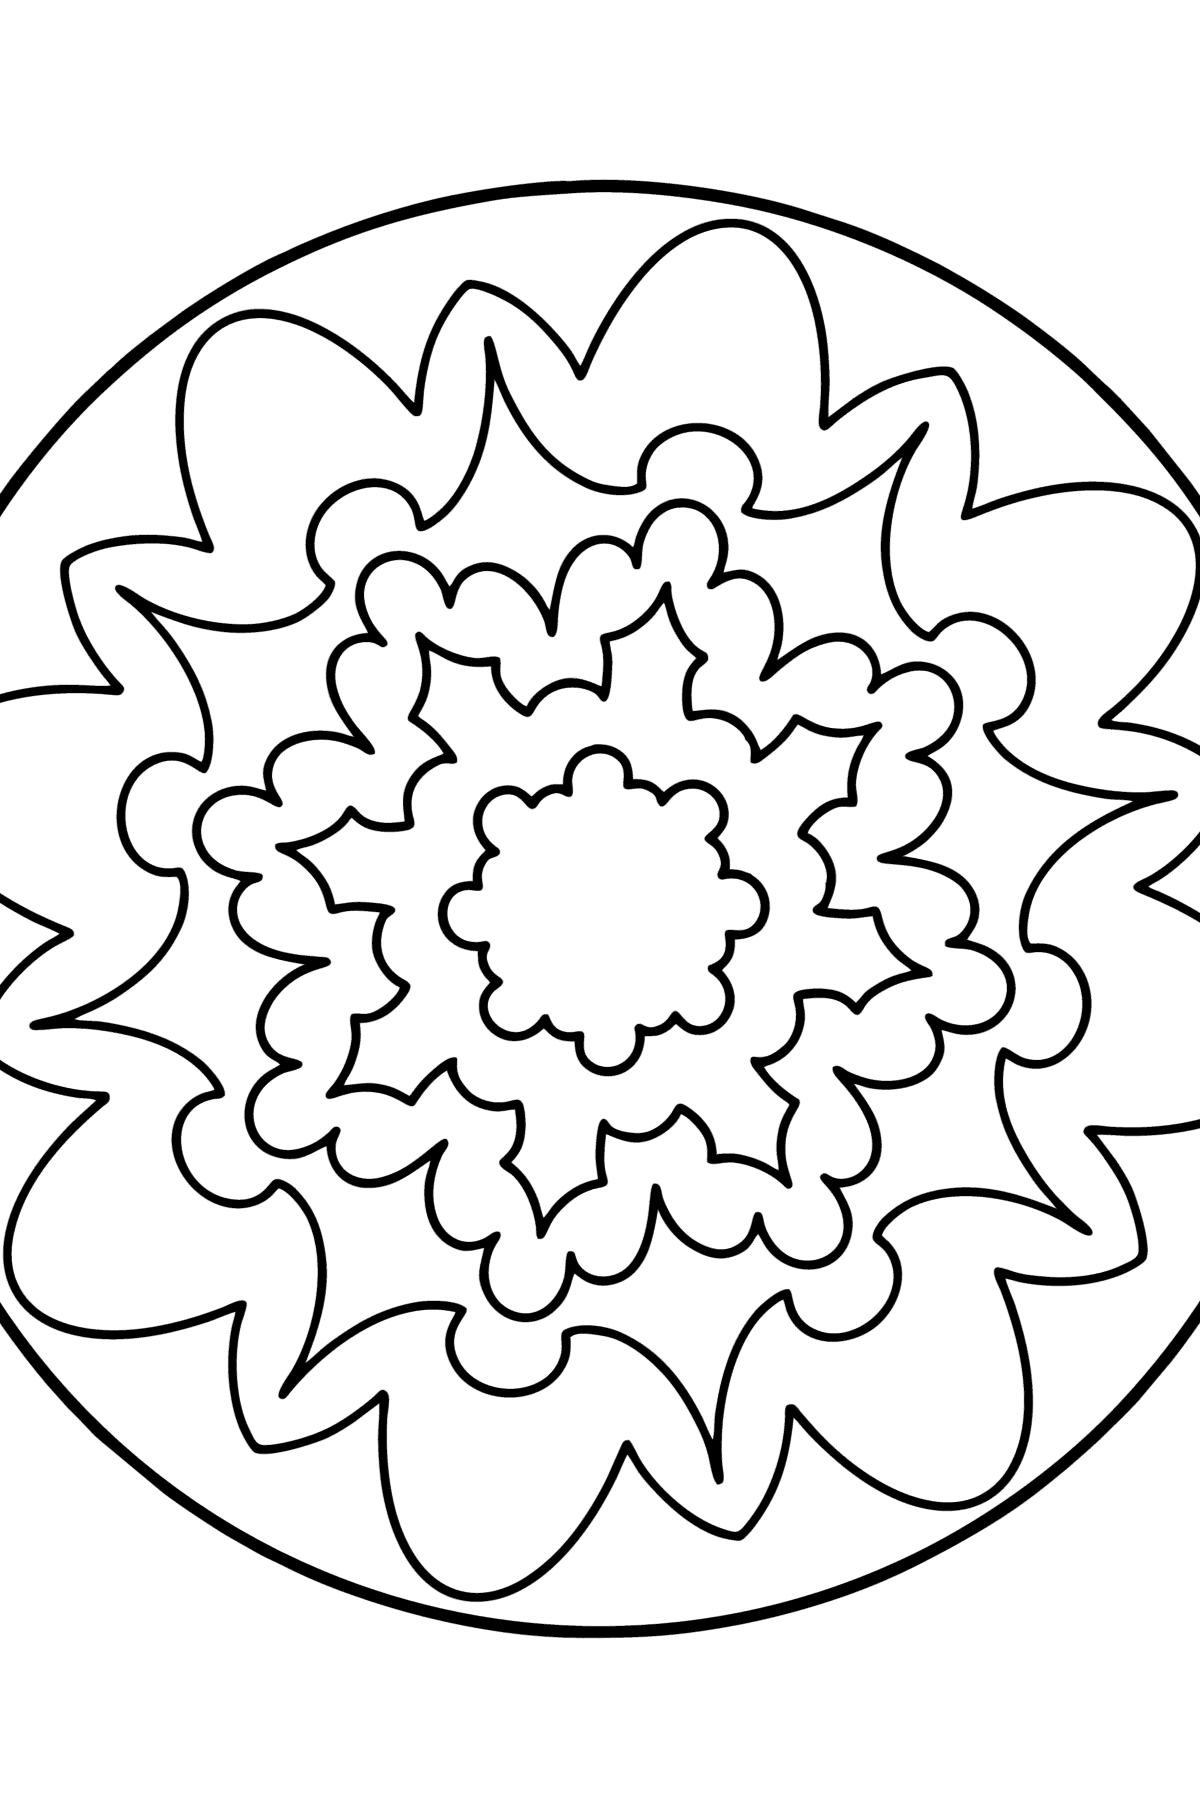 Dibujo para colorear Mandala - 6 elementos - Dibujos para Colorear para Niños